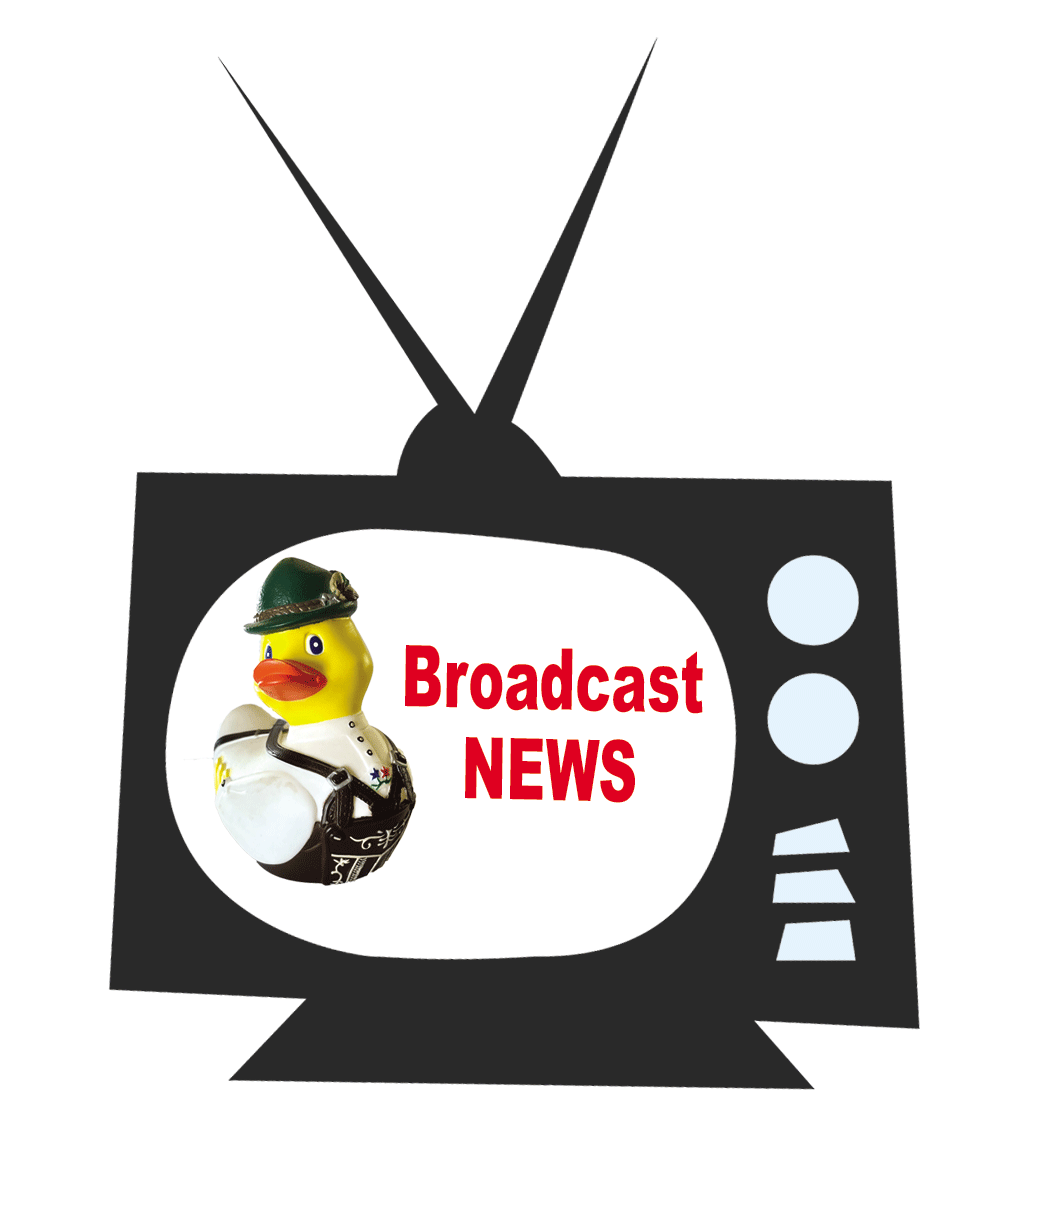 television, news, broadcast, europe, rubber rdukc, rubba ducks, ducktoberfest, Oktoberfest, Bayerisches Fernsehen,